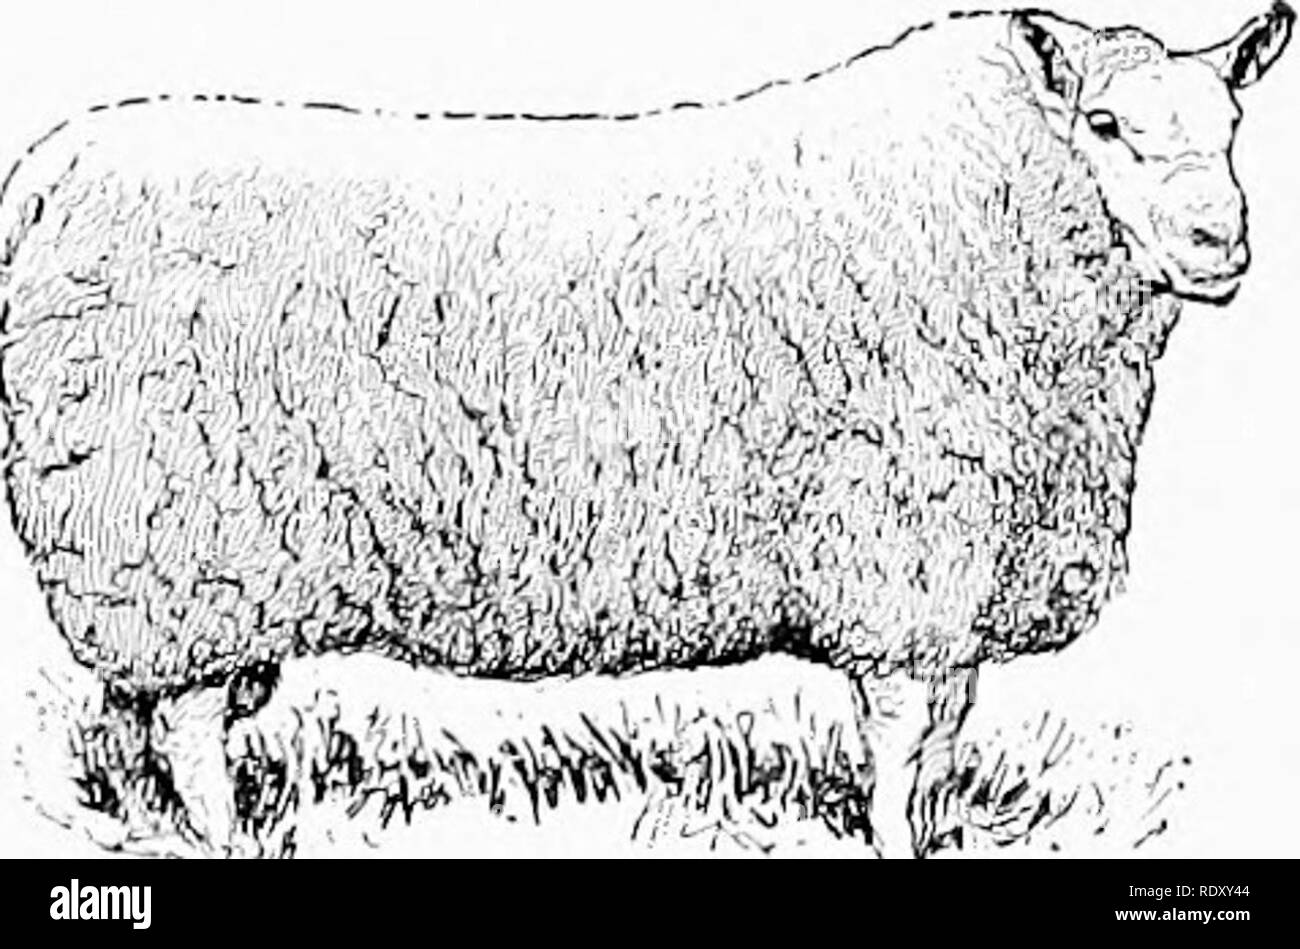 . Die bruten der live-Lager: Durch die live-Züchter. Viehbestand. Die HAMMEL Rassen von Schaf 349 Der teviotdale sind wir für die ersten Verbesserungen in tlie Rasse. Die Mönche von Melrose liad große Herden, die in der grenzüberschreitenden Felder verstreut waren. Es war nicht bis 1750, dass die Grenze Landwirt ga ^' e viel Aufmerksamkeit auf die Rasse oder die vollendete anythino - in seiner Imi) rovement. Cheviots wurden in Kanada in den frühen neunzehnten Jahrhundert genommen. In 1 S3 S, Robert Young, von Delhi, New York, machte eine Einfuhr, die vier Jahre später gefolgt von anderen Einfuhren derselben Grafschaft. In 1 S4.5, waren sie Imp Stockfoto